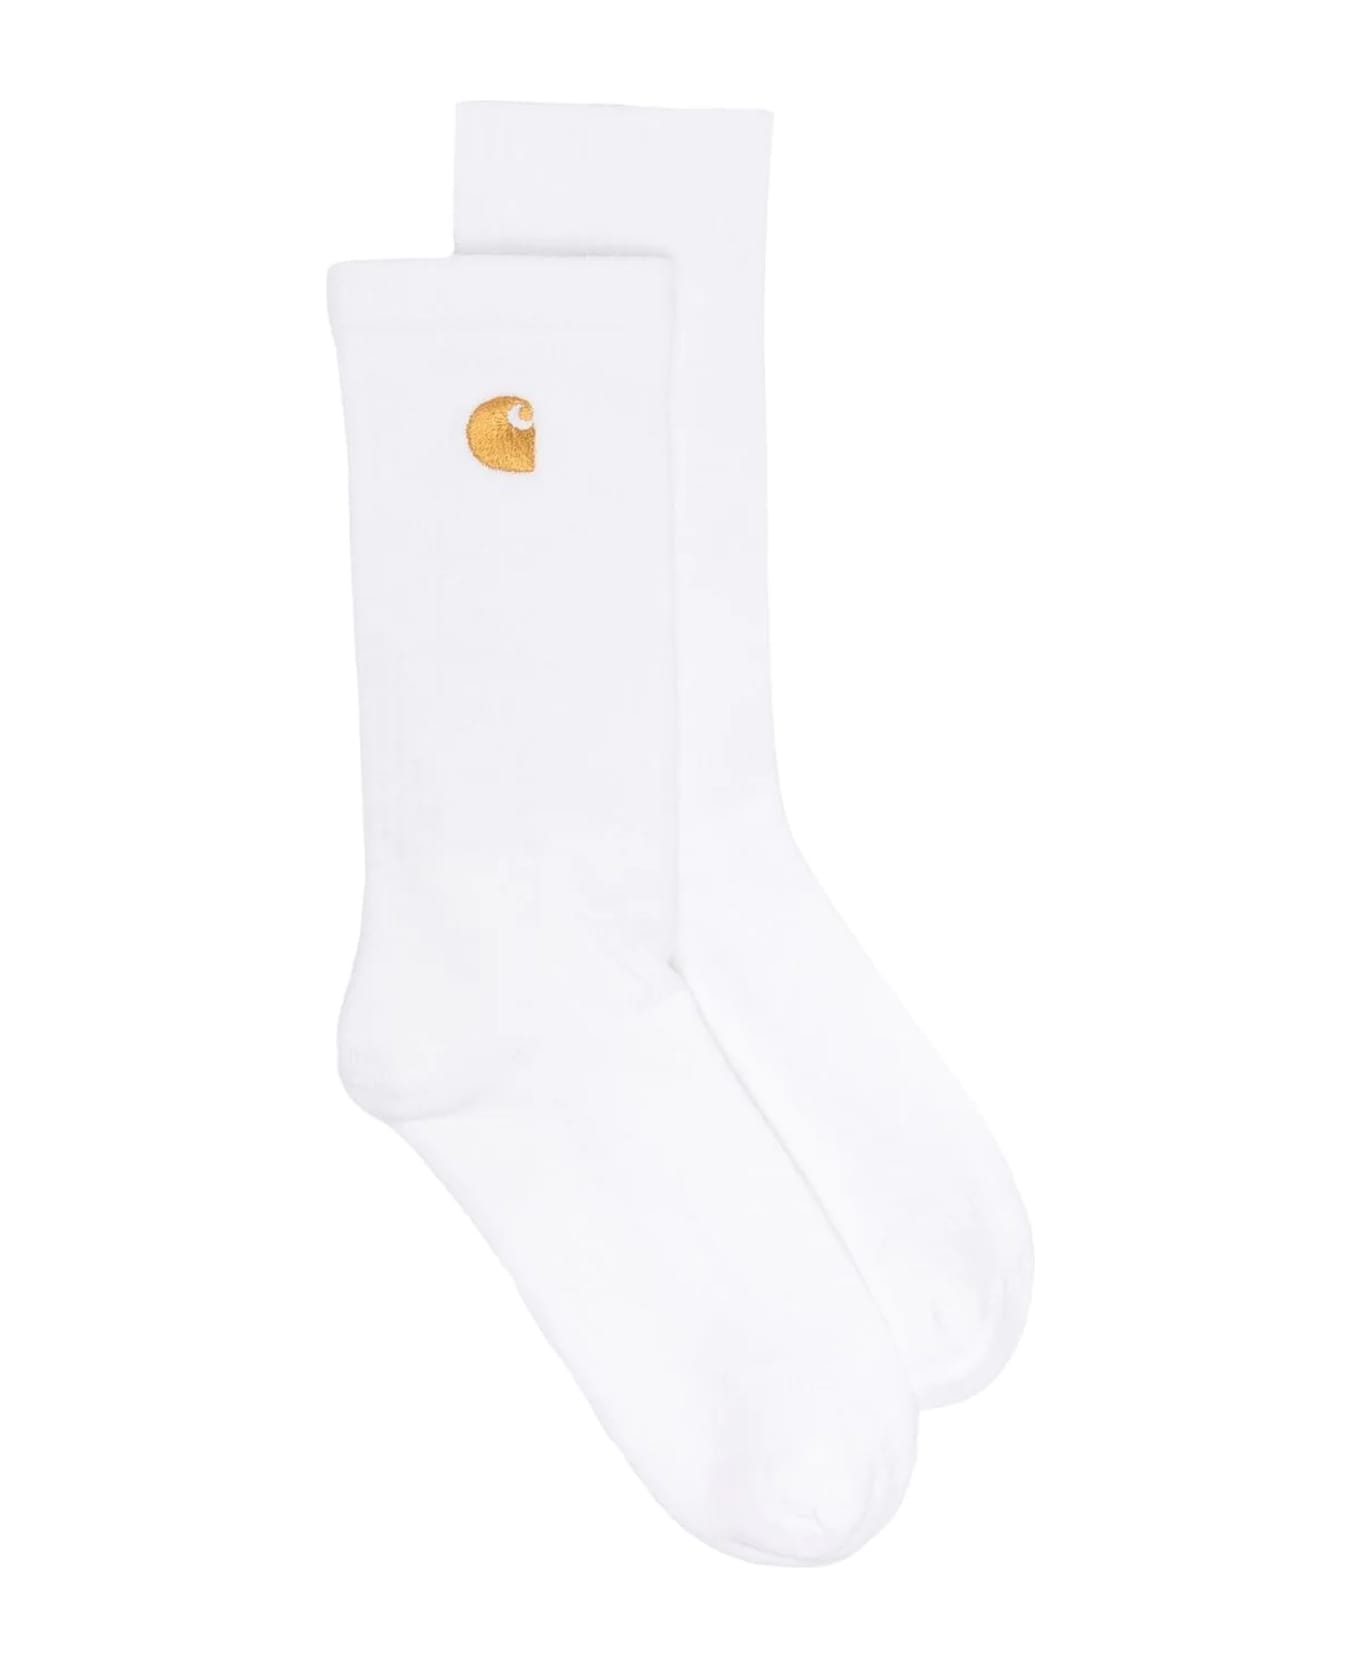 Carhartt White Cotton Blend Socks - White